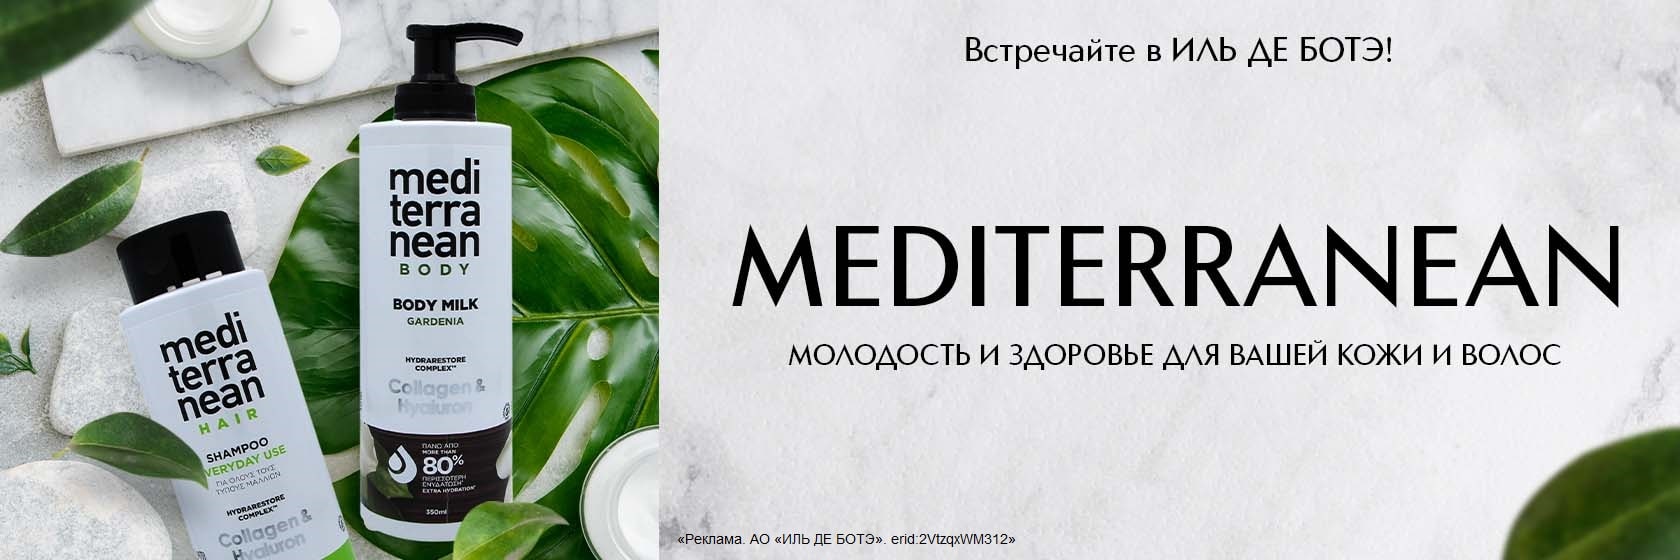 Встречайте новый бренд MEDITERRANEAN в ИЛЬ ДЕ БОТЭ!